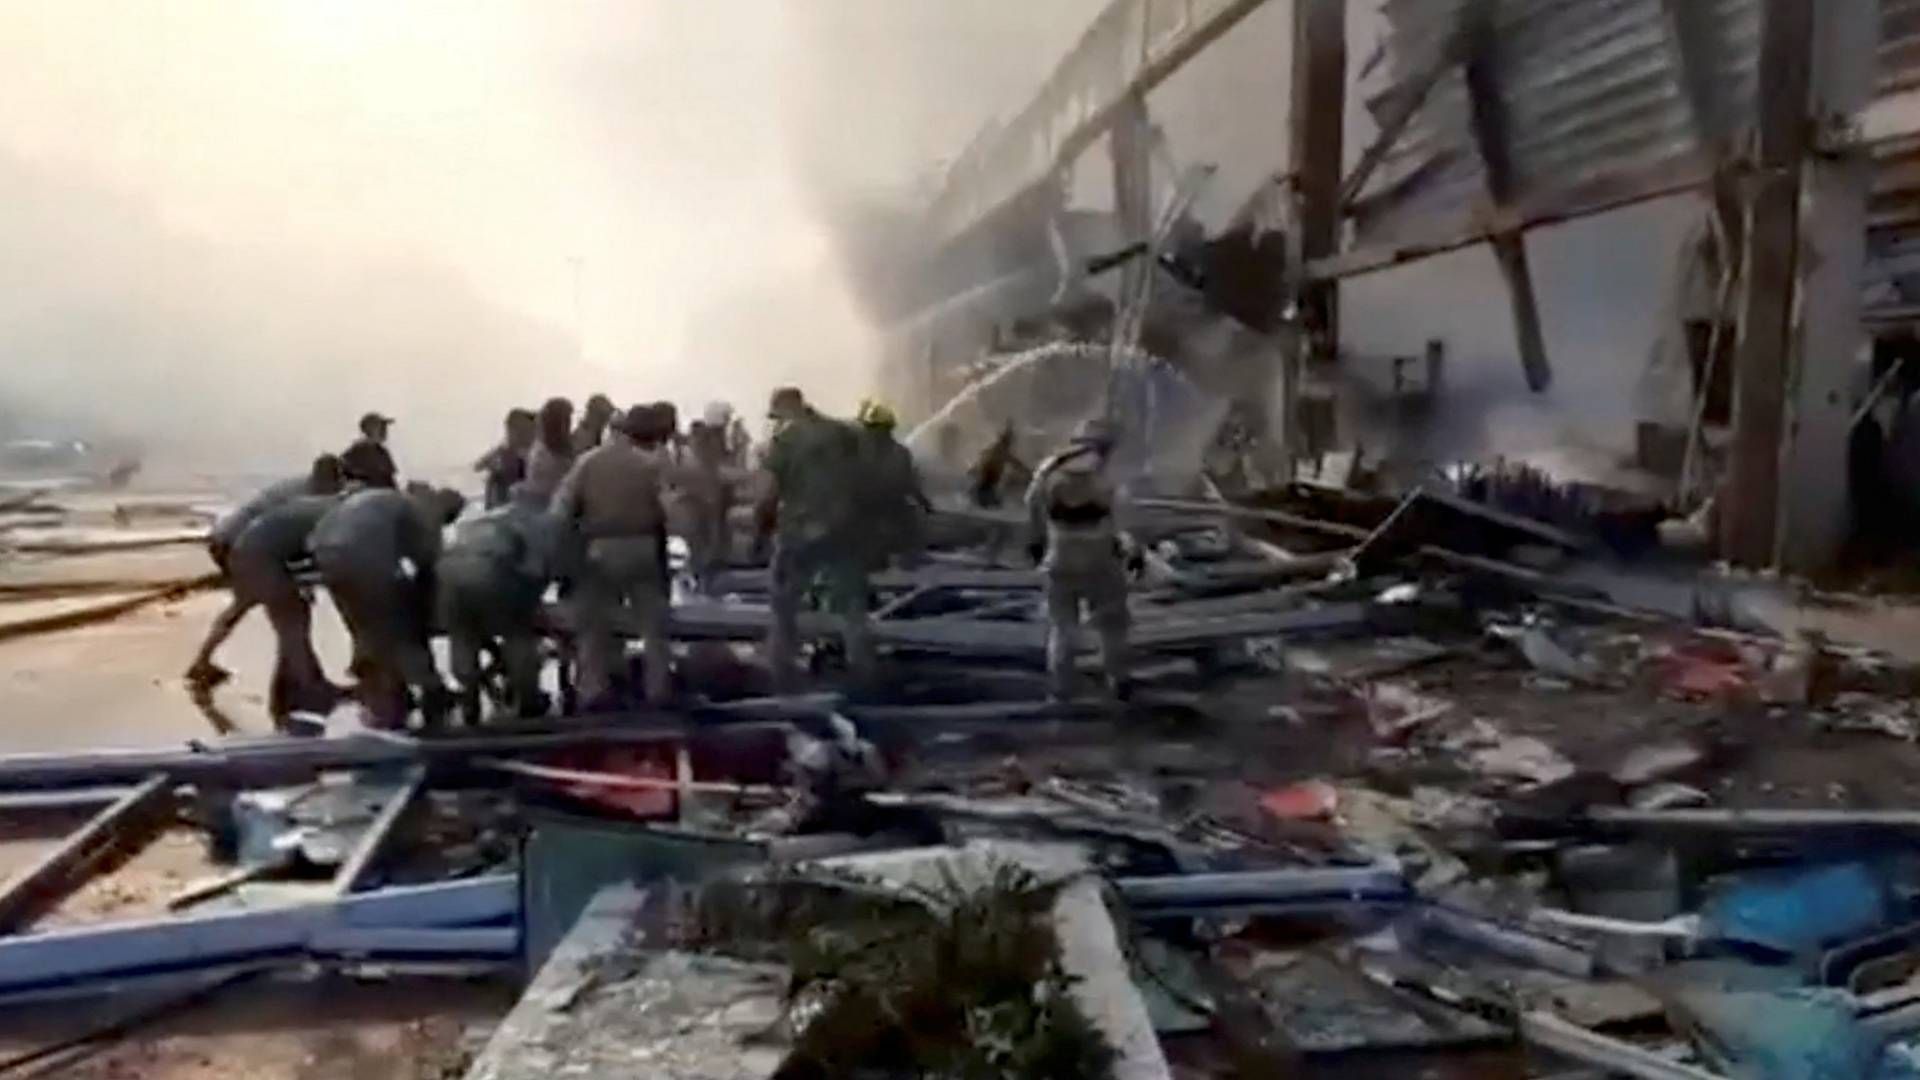 Et shoppingcenter i den ukrainske by Krementjuk er blevet ramt af et russisk missilangreb. | Foto: STATE EMERGENCY SERVICE OF UKRAI/VIA REUTERS / X80001